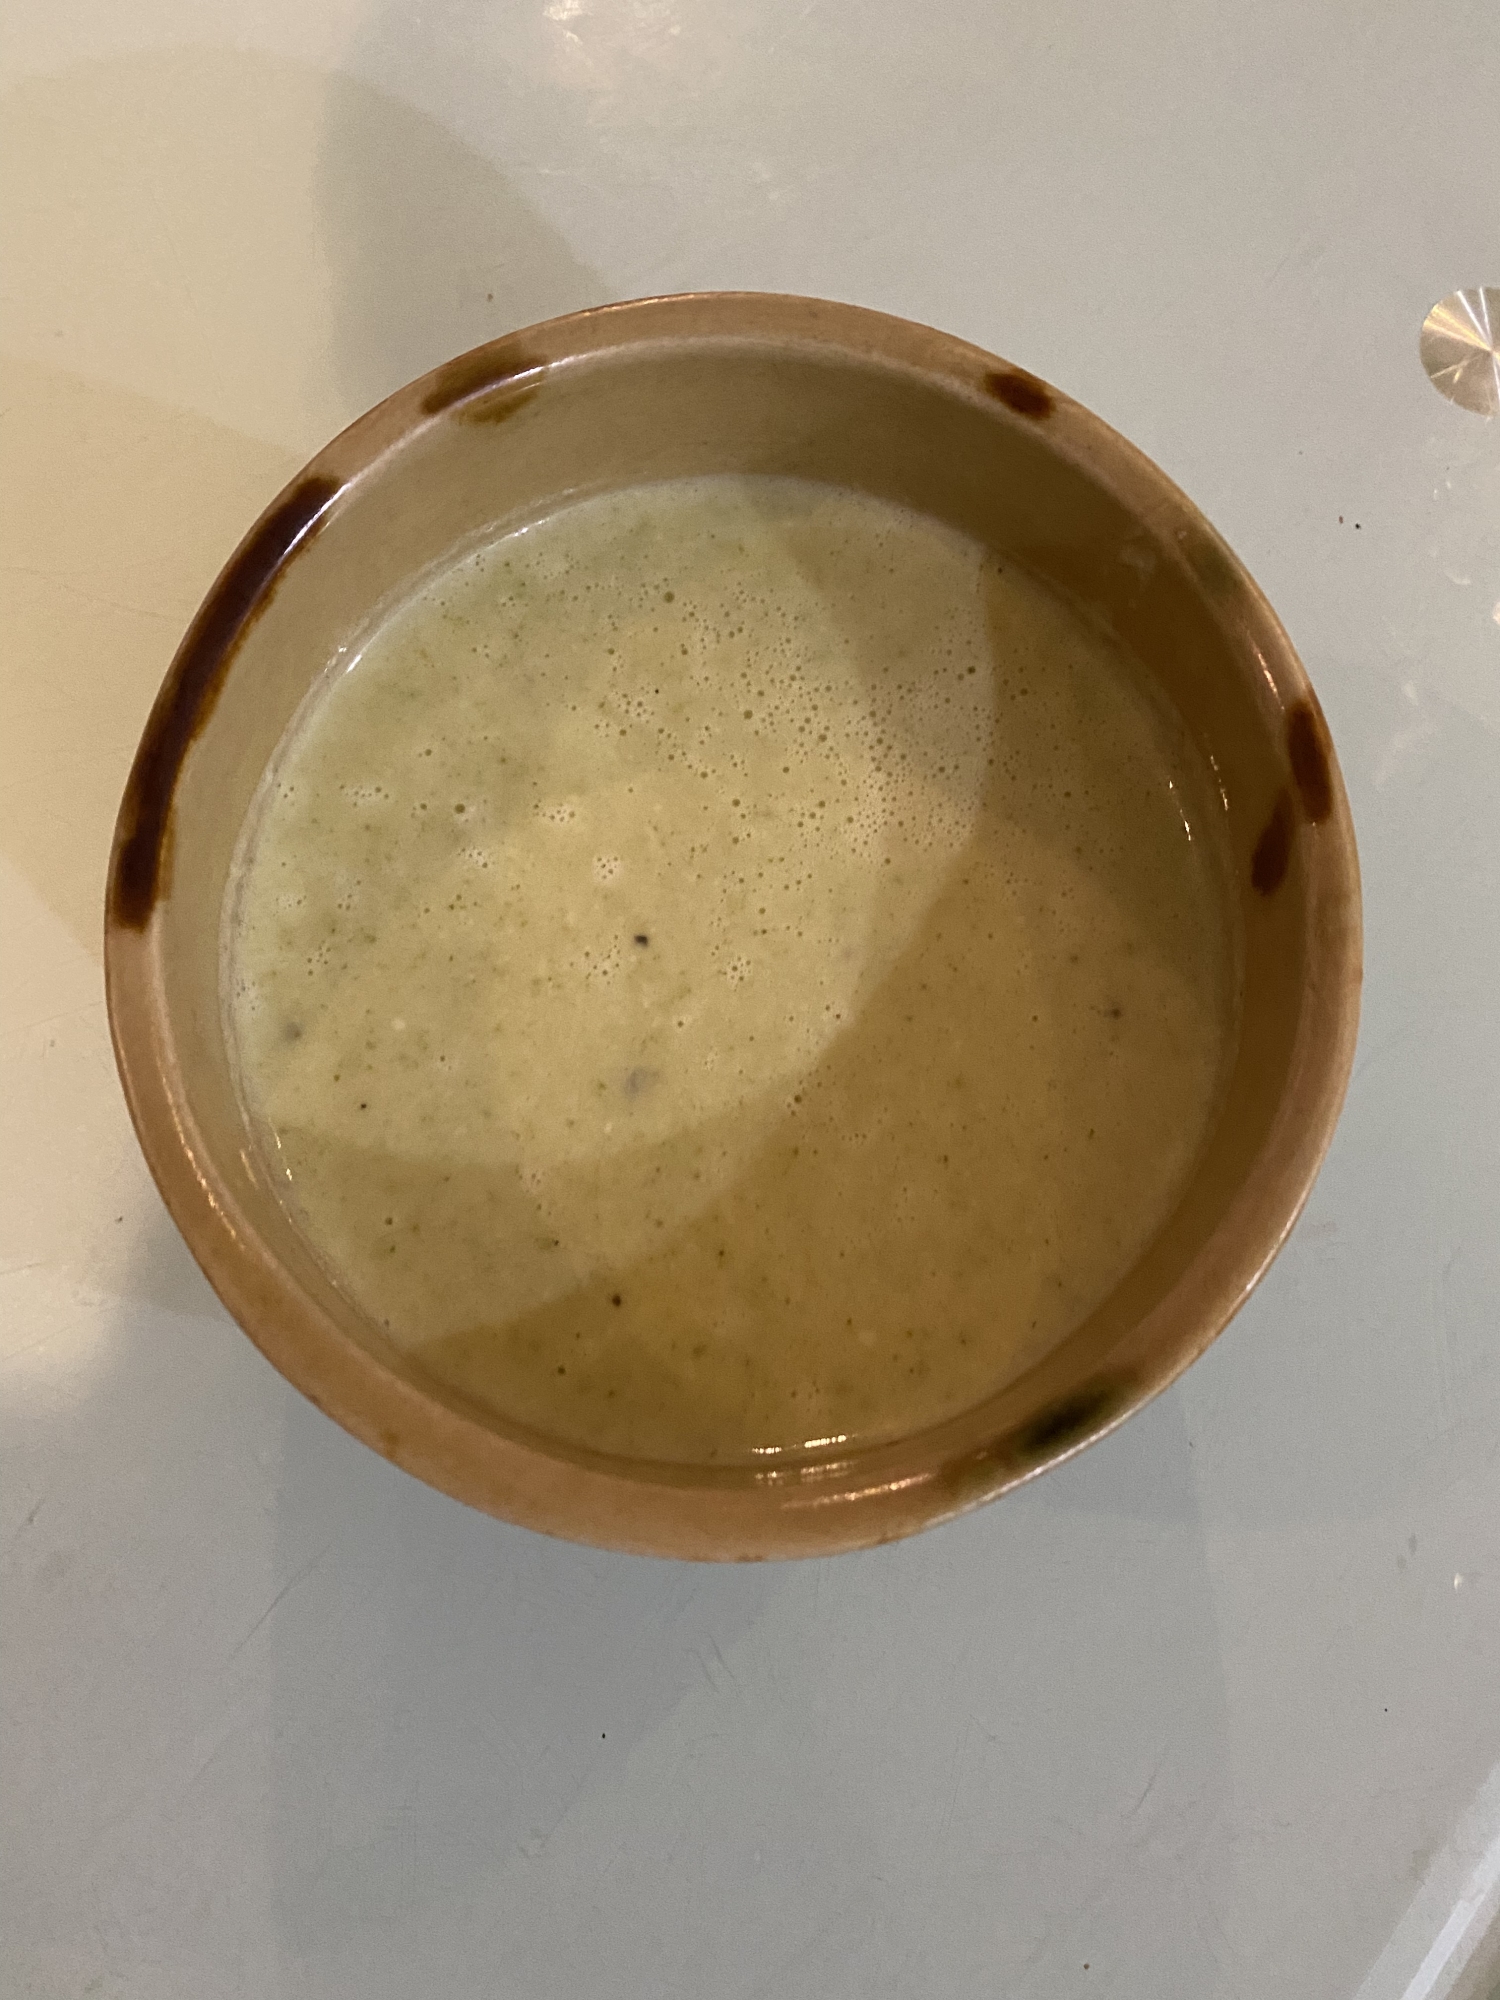 ココナッツミルクでブロッコリースープ